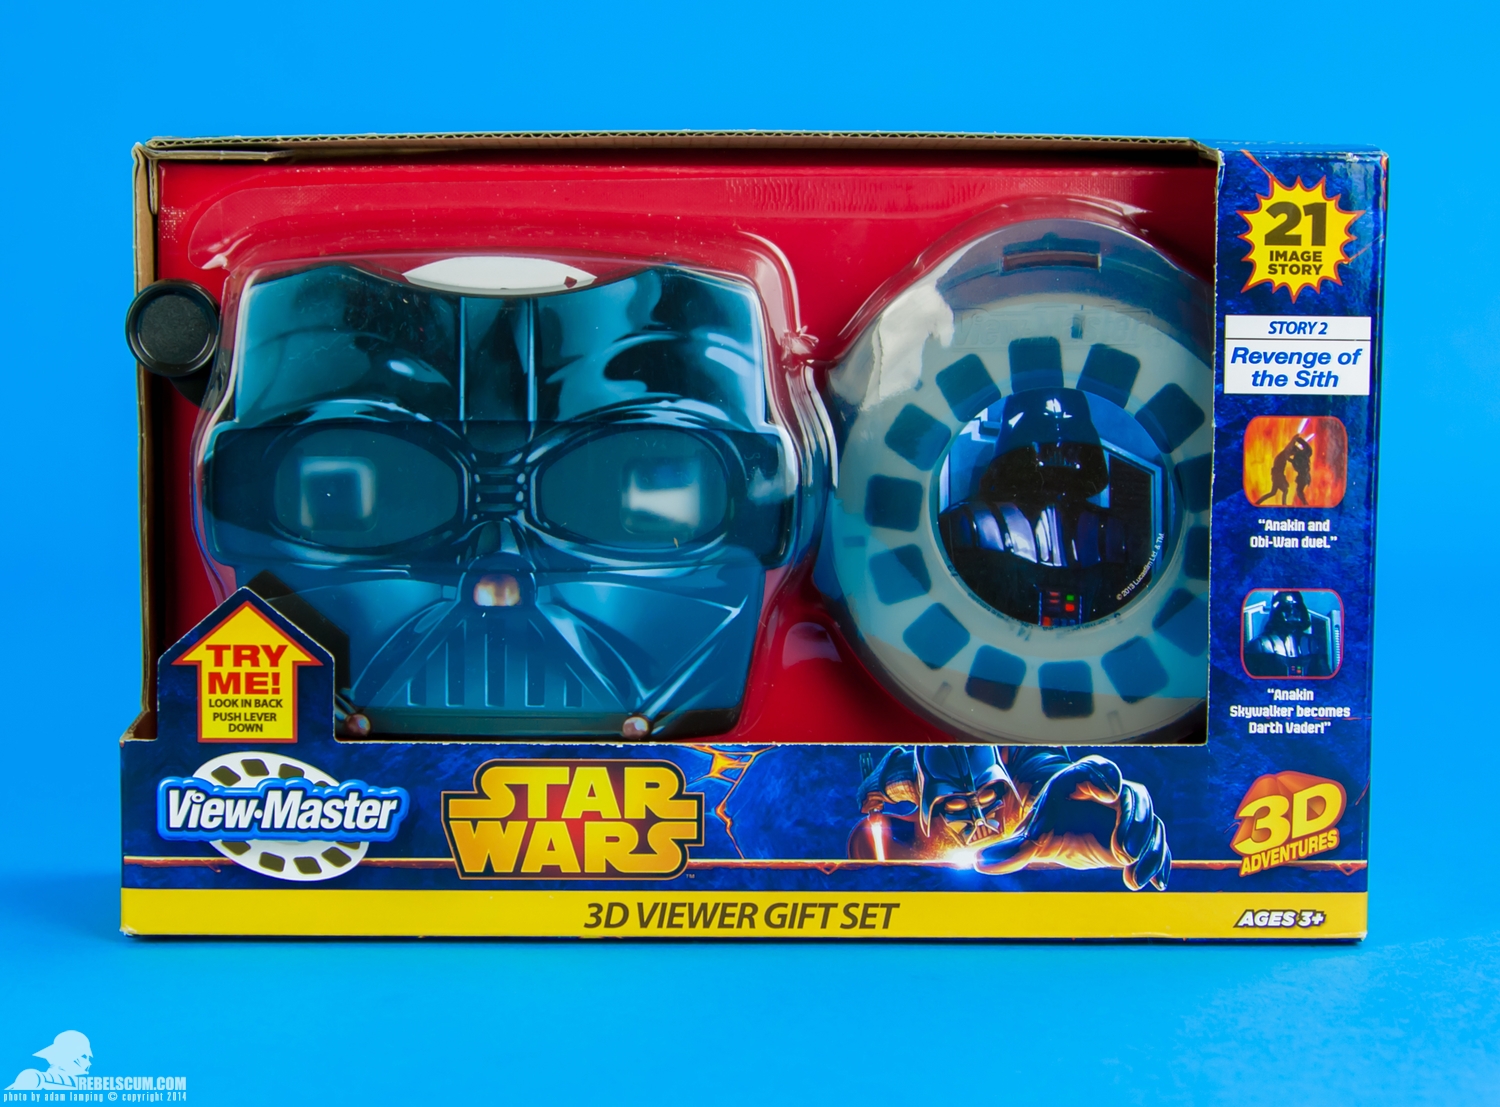 View-Master-Star-Wars-Darth-Vader-3D-Viewer-Gift-Set-013.jpg